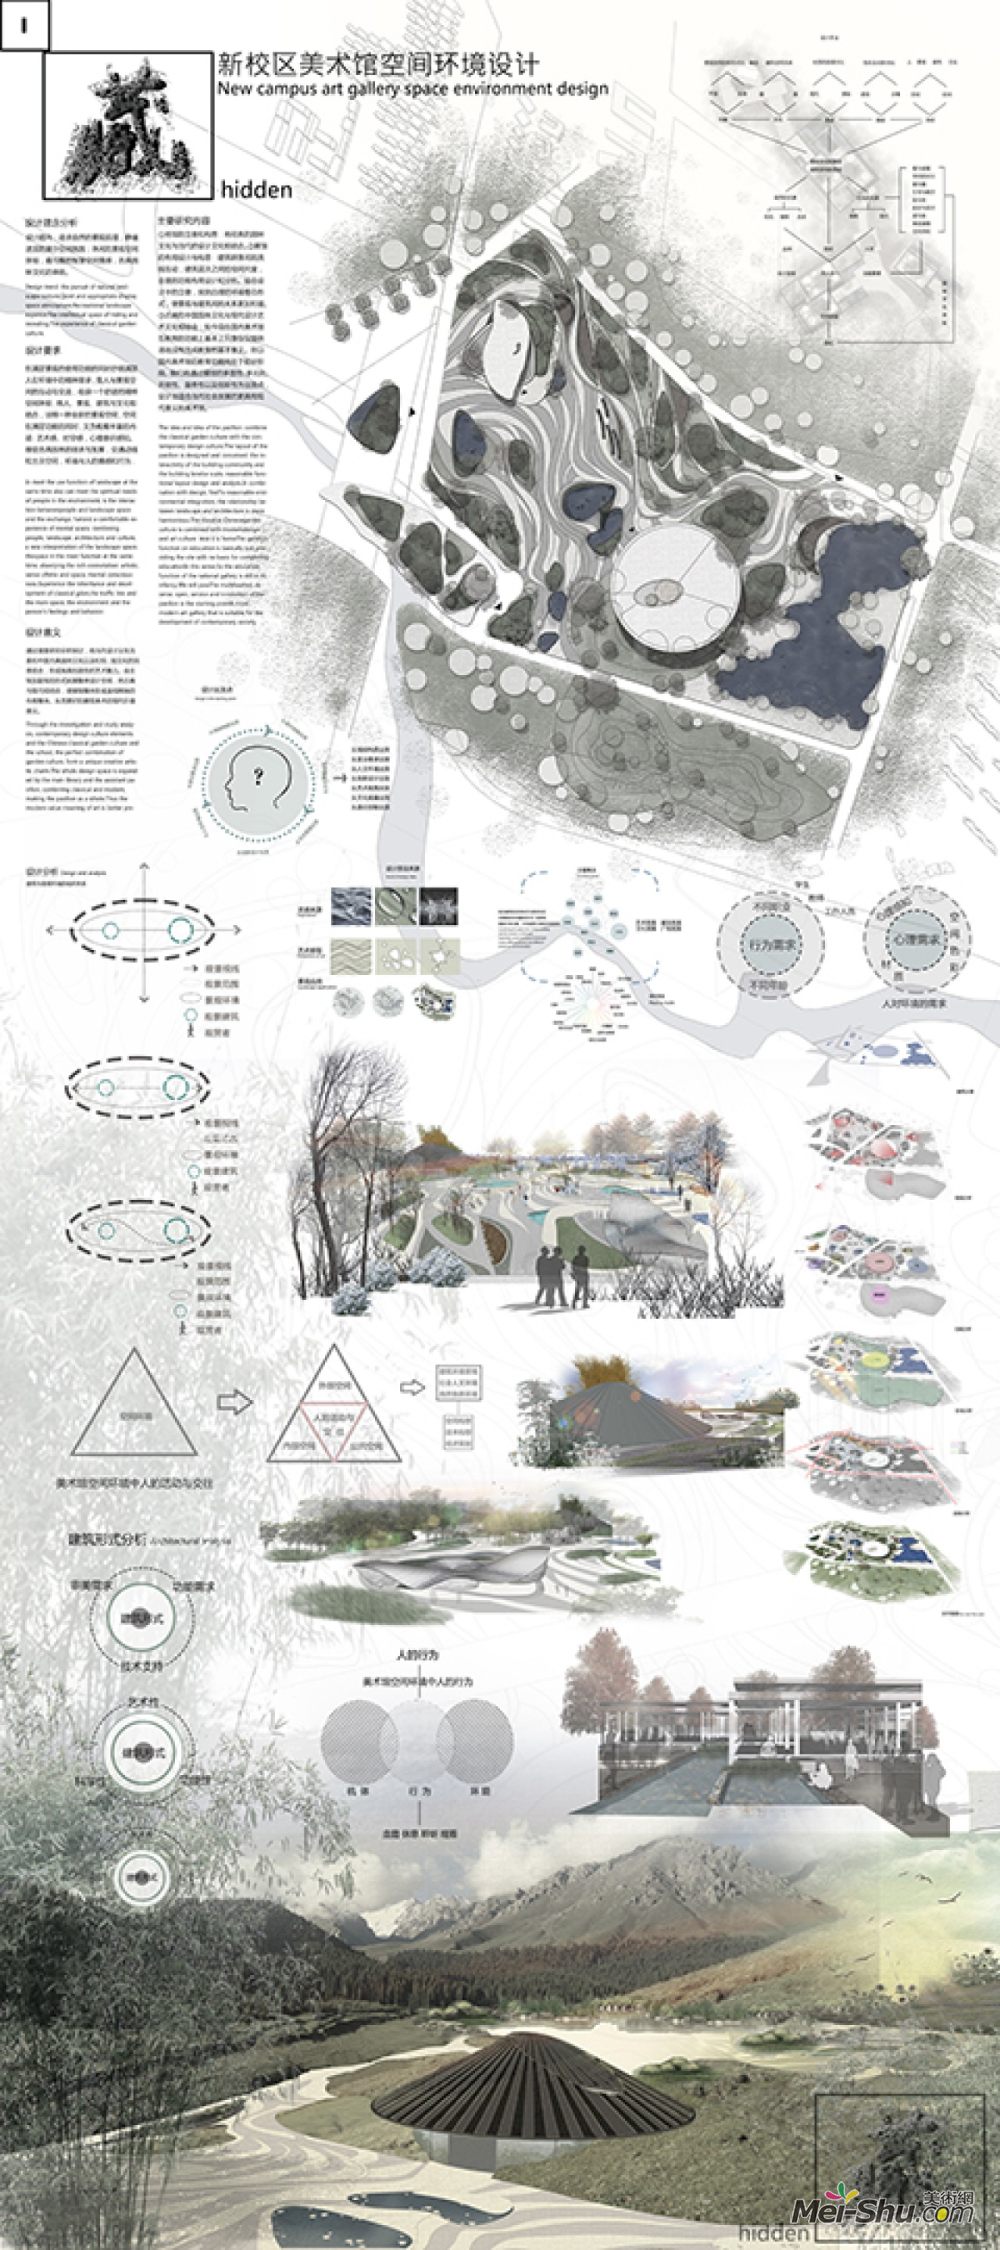 《藏美术馆空间环境设计(排版-展2)》王娇作品